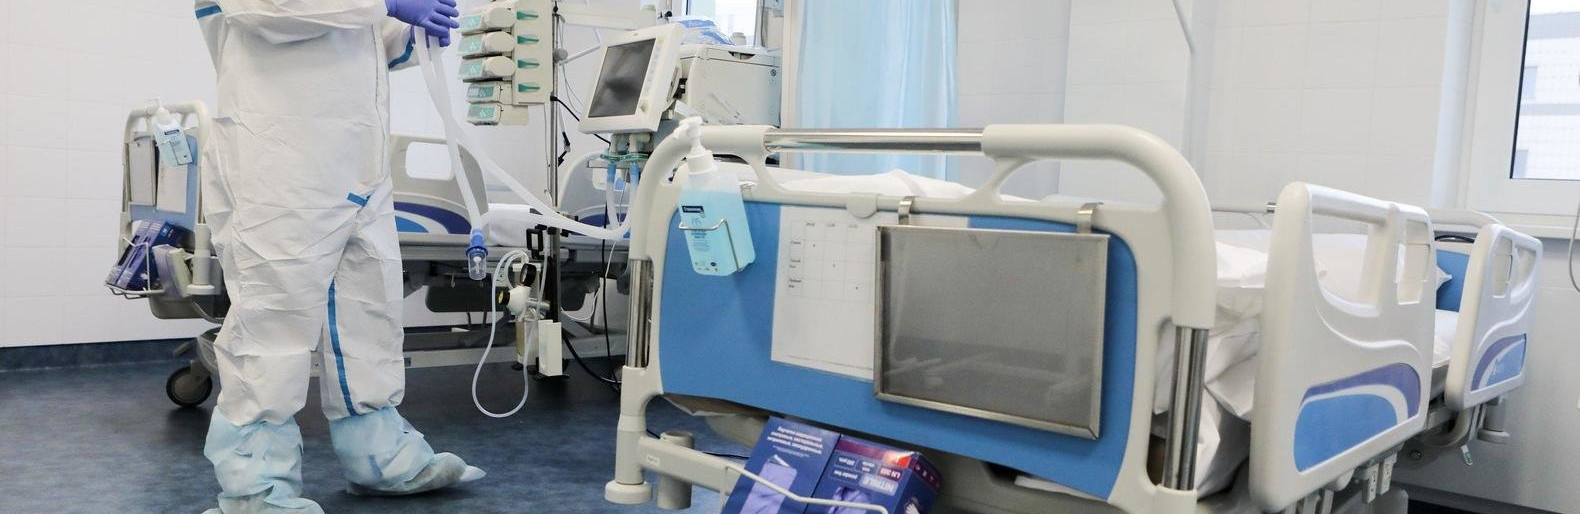 11 больниц Владимирской области принимают больных коронавирусом